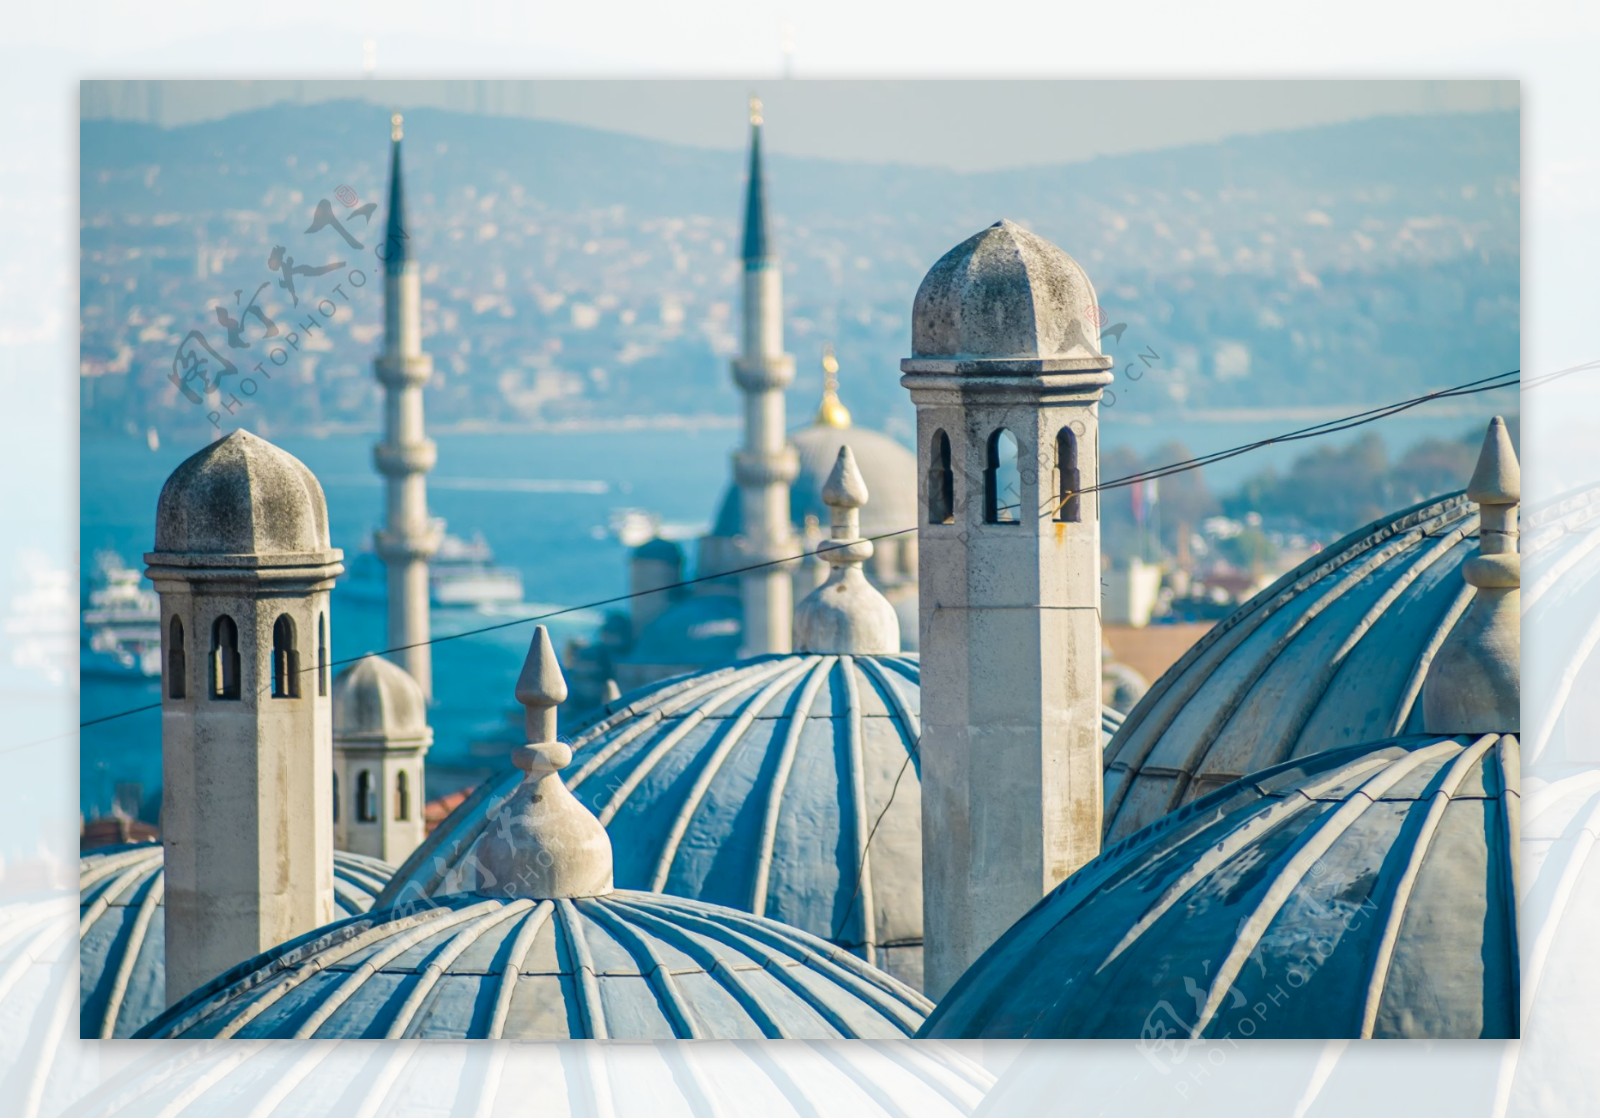 土耳其建筑风景图片